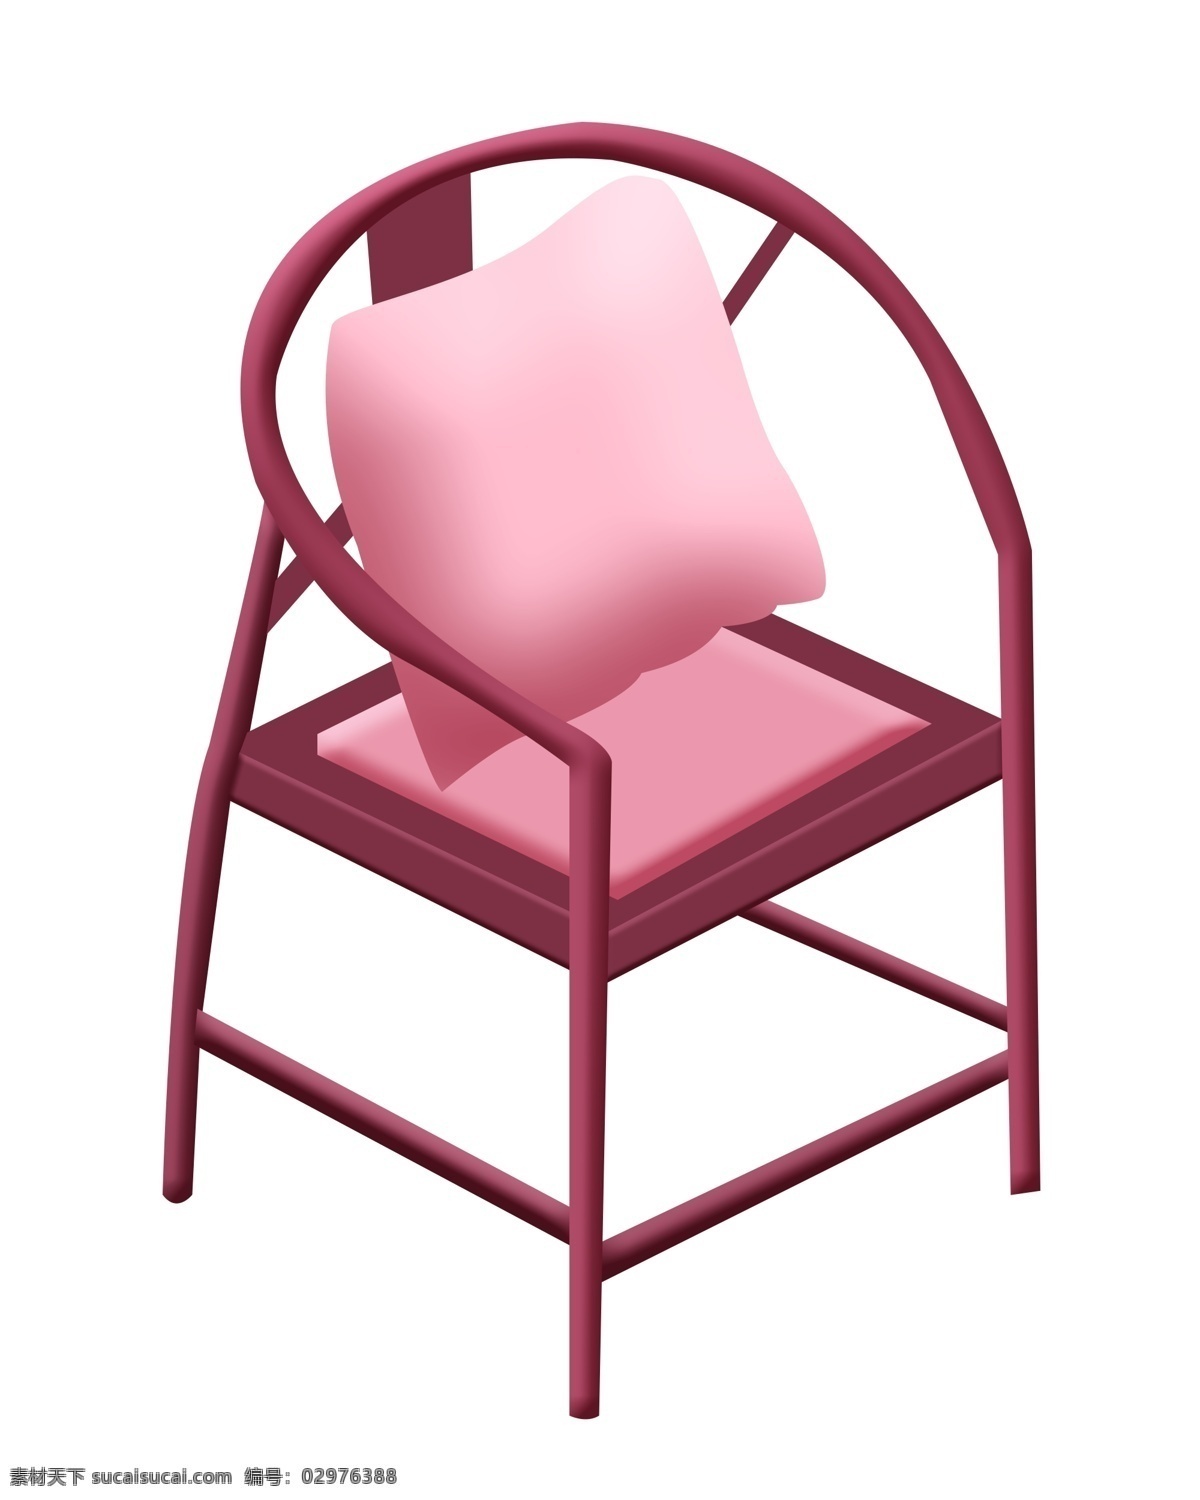 沙发椅子 卡通 插画 沙发的椅子 卡通插画 家具插画 椅子插画 家具椅子 居家用品 漂亮的椅子